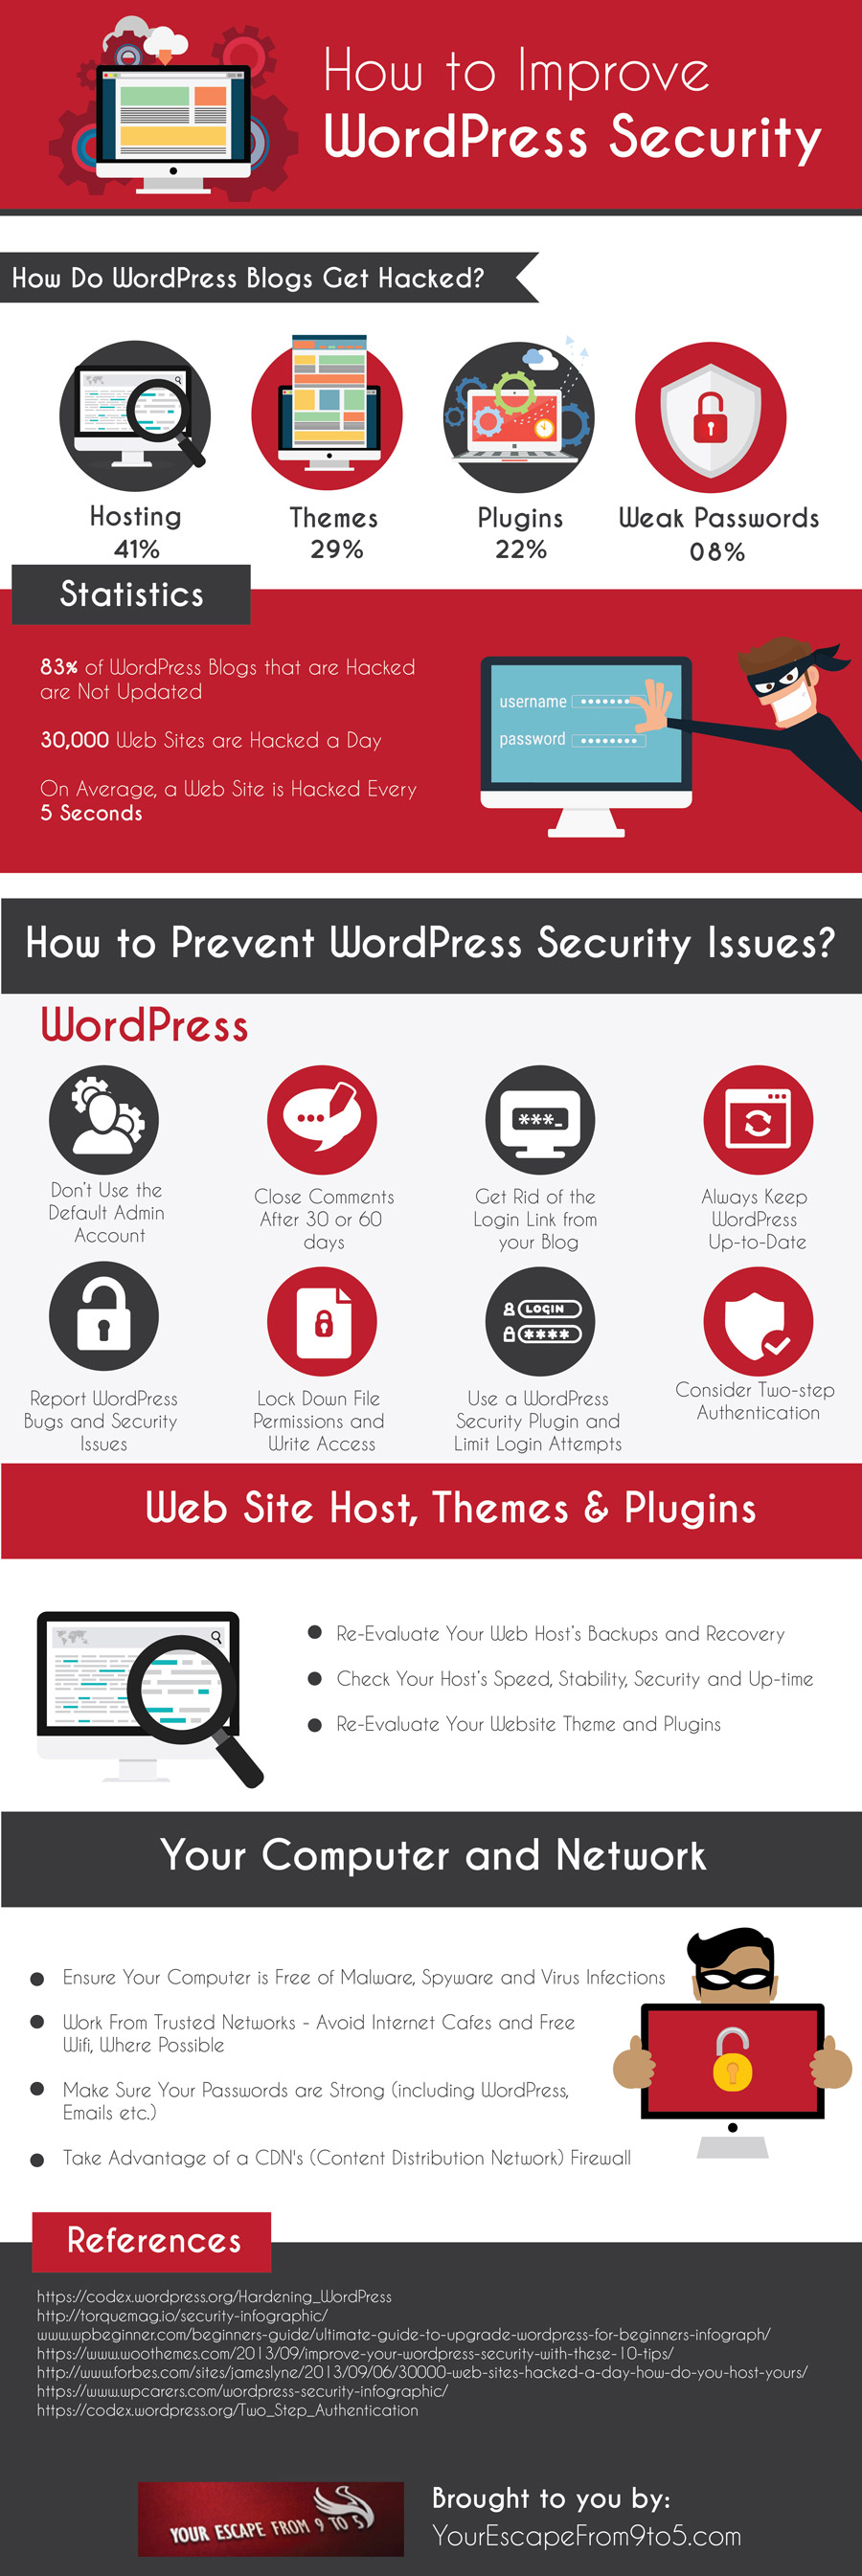 Infografía: Cómo mejorar la seguridad en wordpress